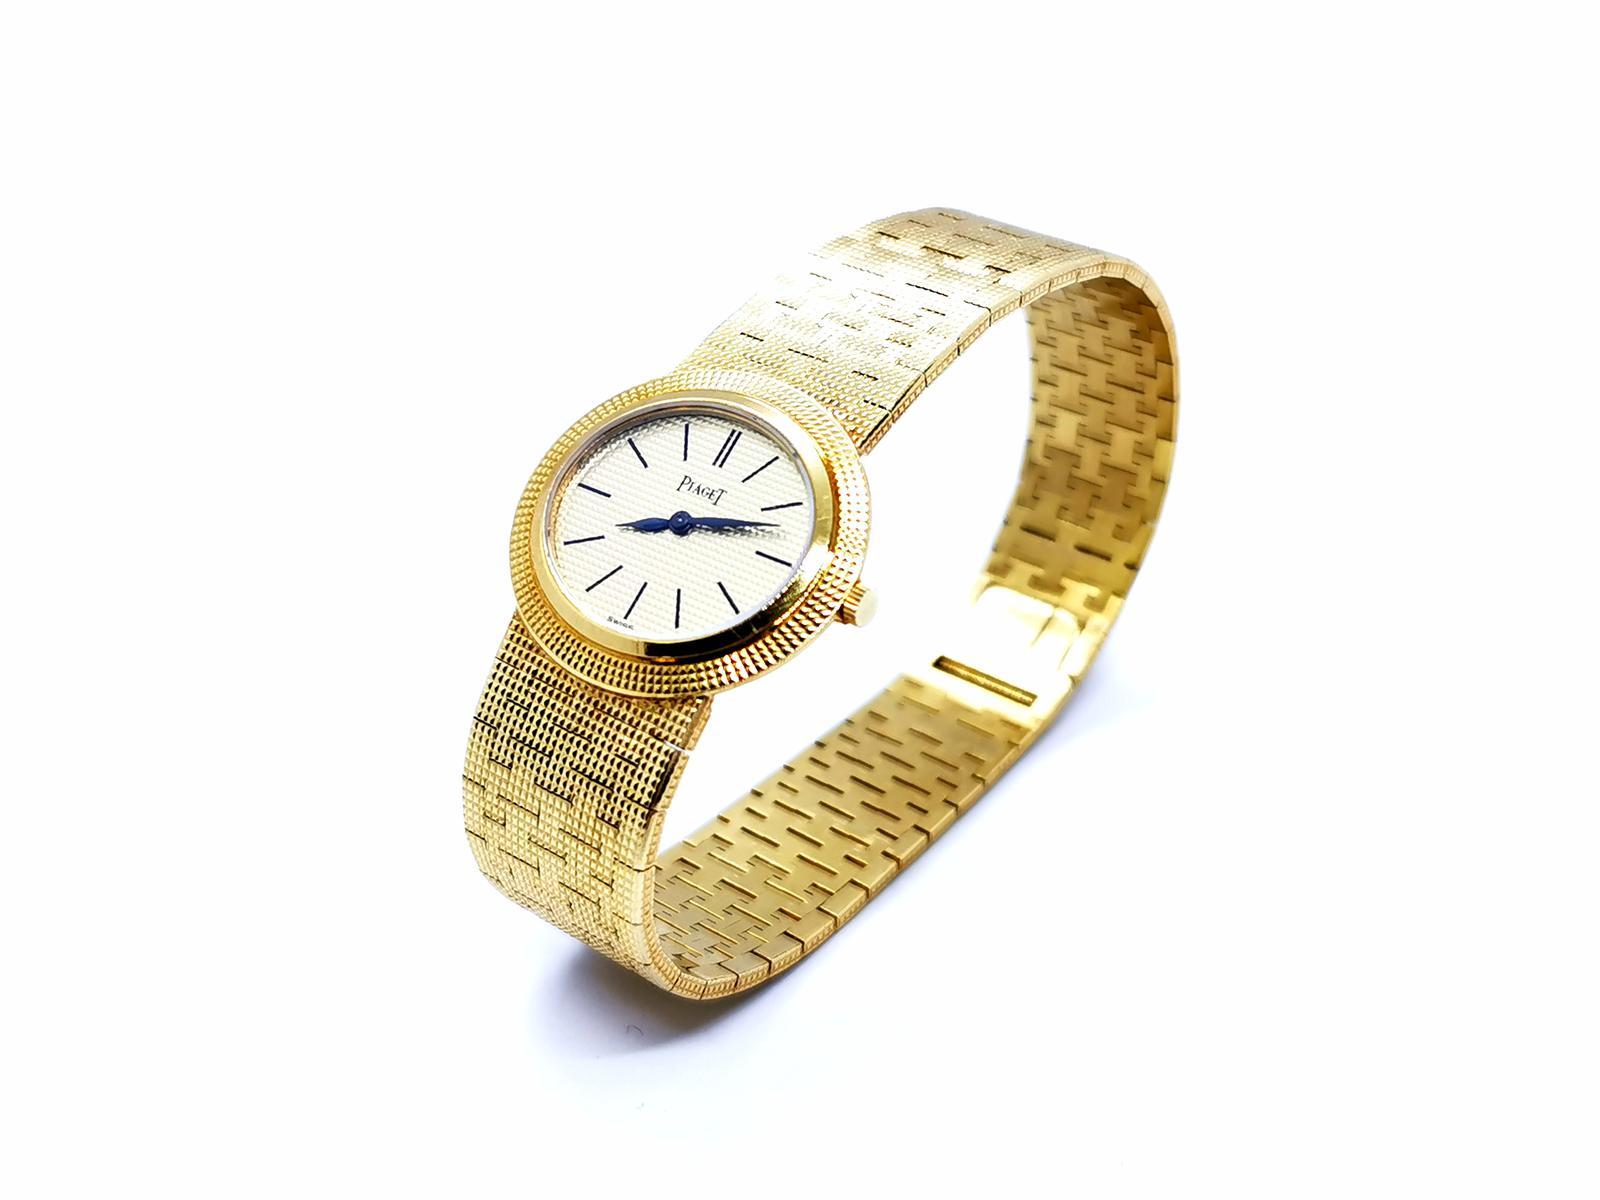 Montres pour femmes signées Piaget. or jaune 750 millièmes. boîtier ovale. mouvement mécanique. dimensions du boîtier : 26,8 mm x 24 mm. longueur du bracelet : 18,5 cm. largeur du bracelet avant : 1,68 cm à l'arrière largeur du bracelet : 1,38 cm.